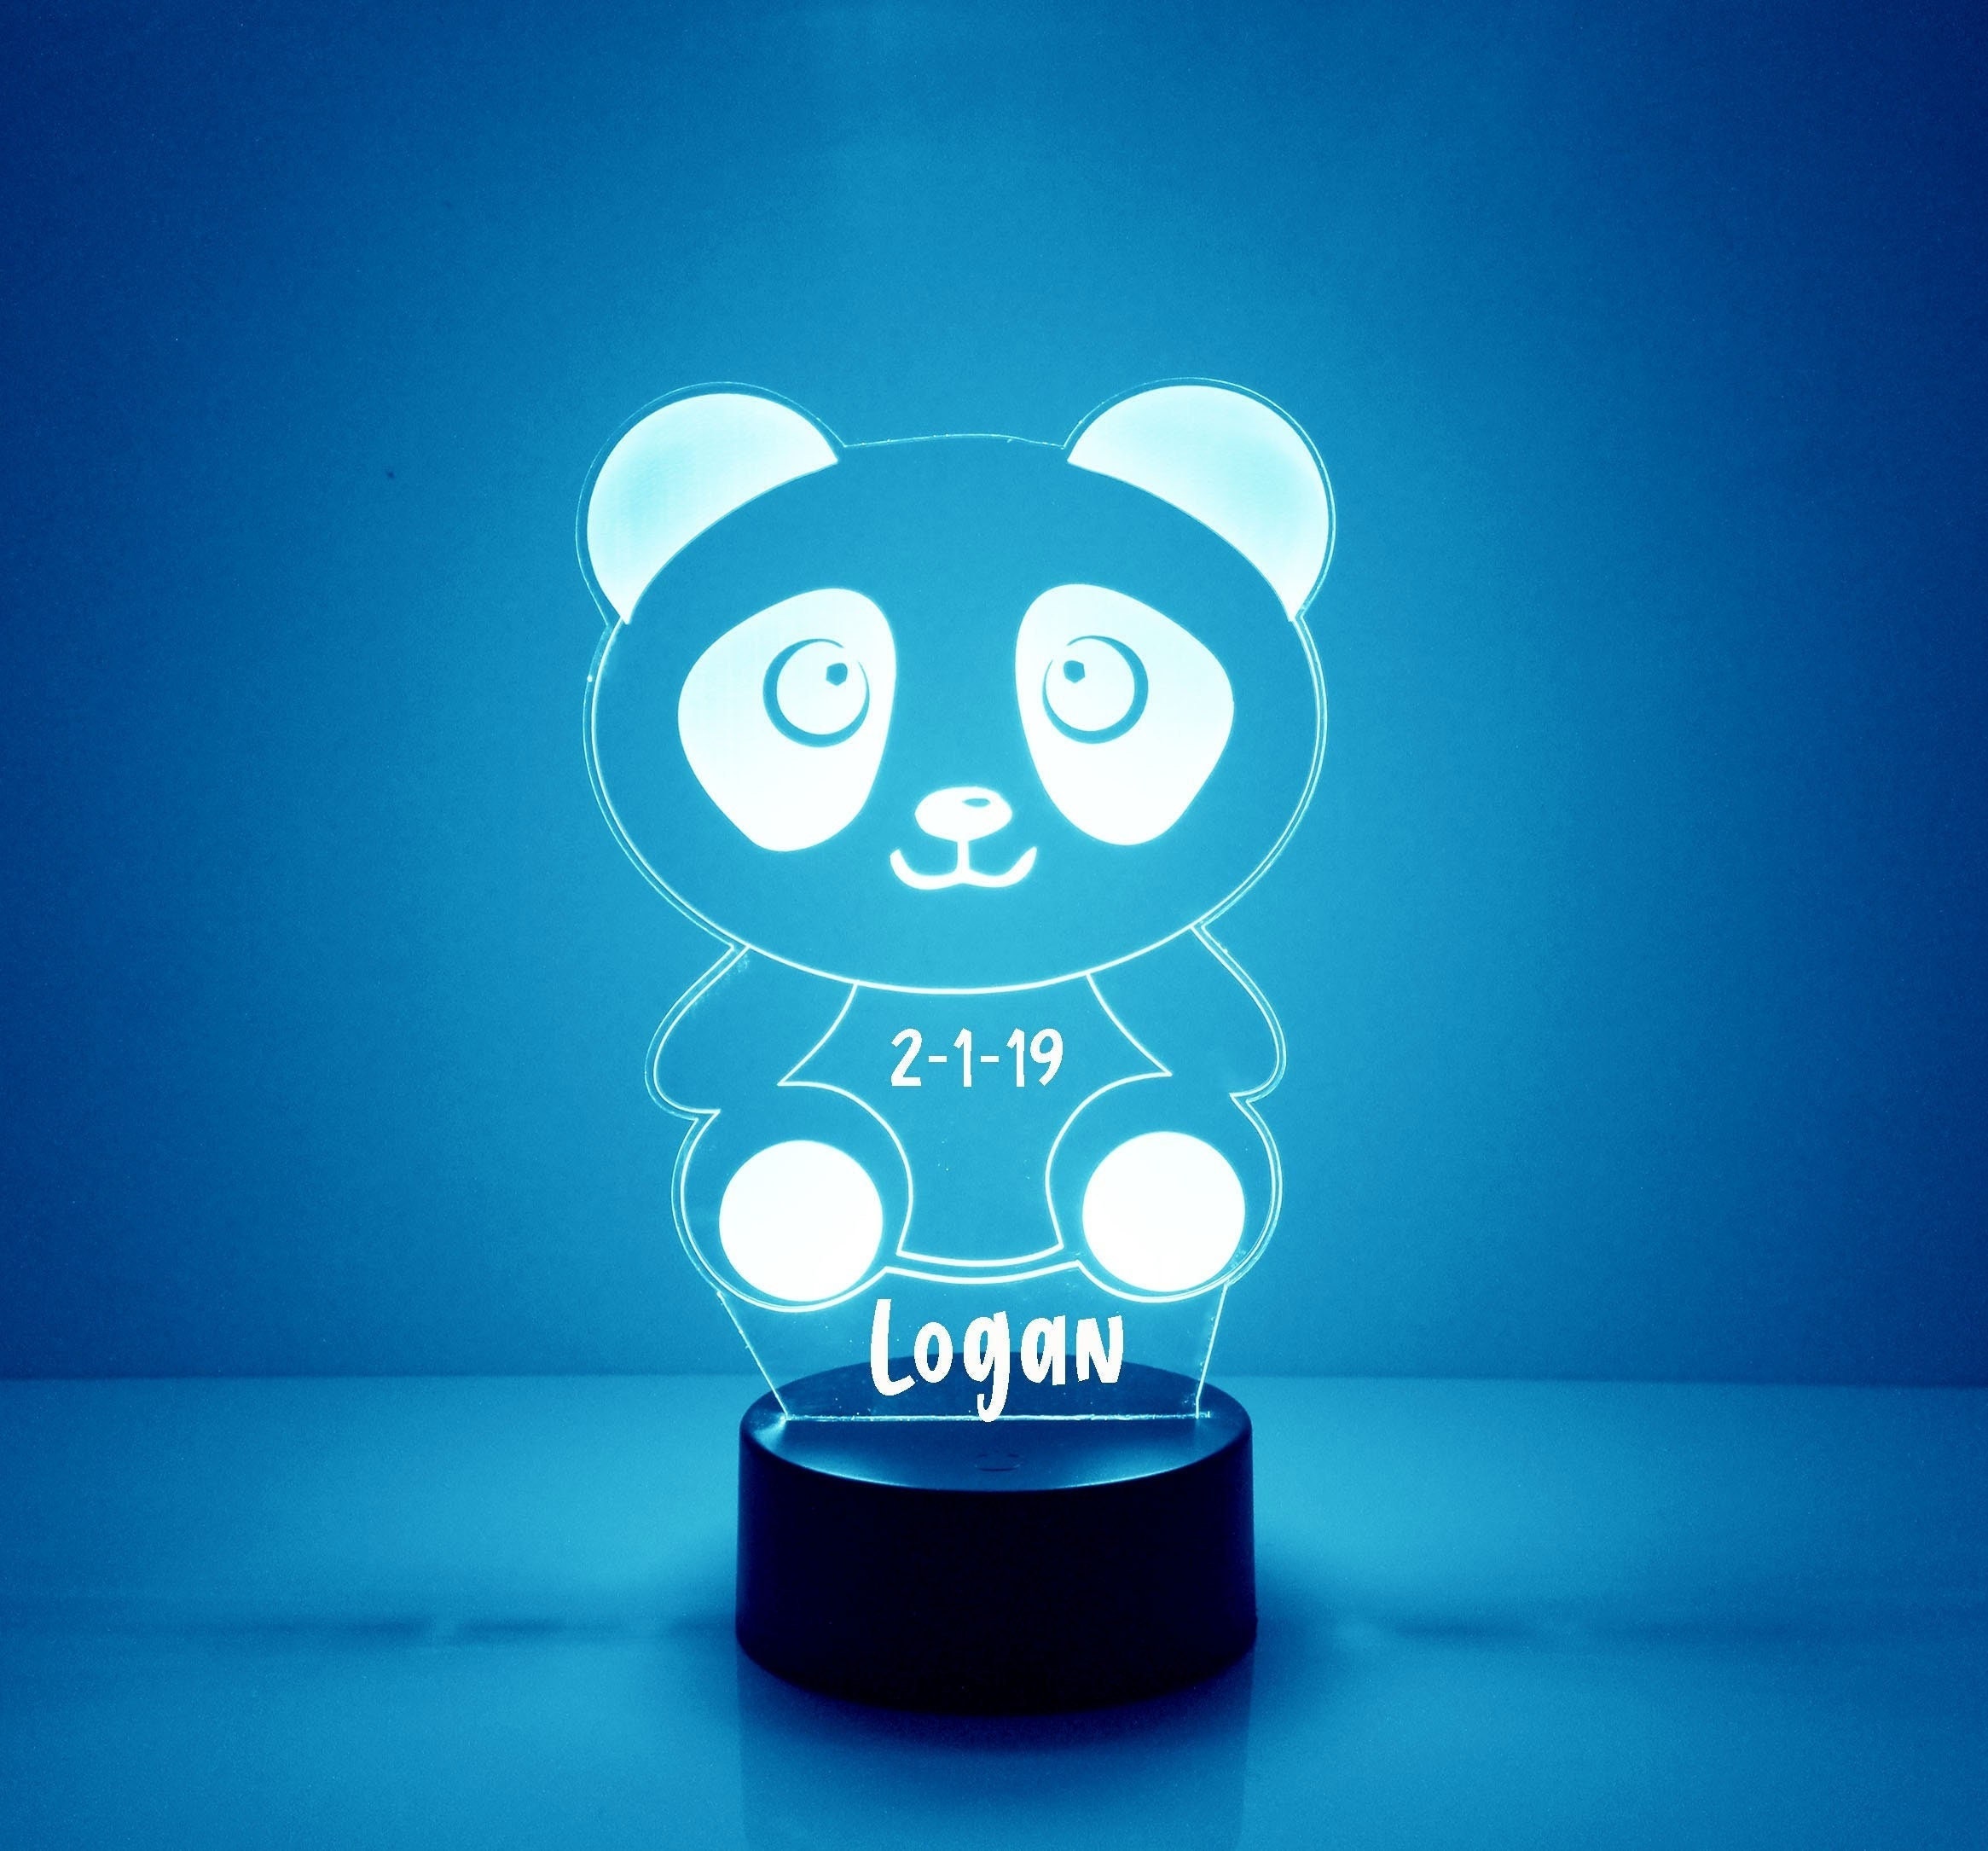 Lampe de chevet enfant ours Panda blue